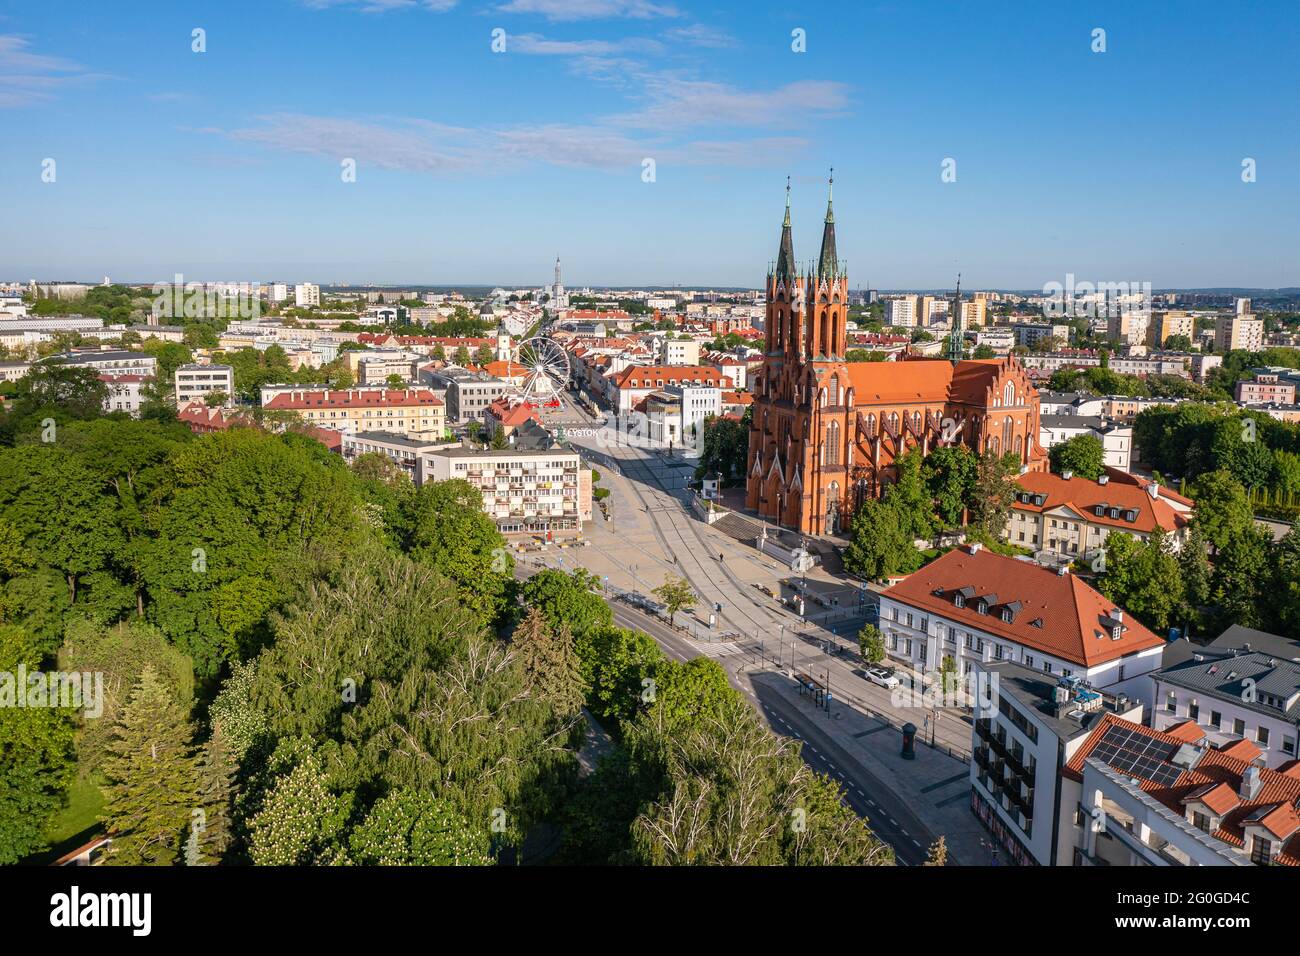 Vue aérienne de la paroisse et de l'ancien marché de Bialystok, Pologne Banque D'Images